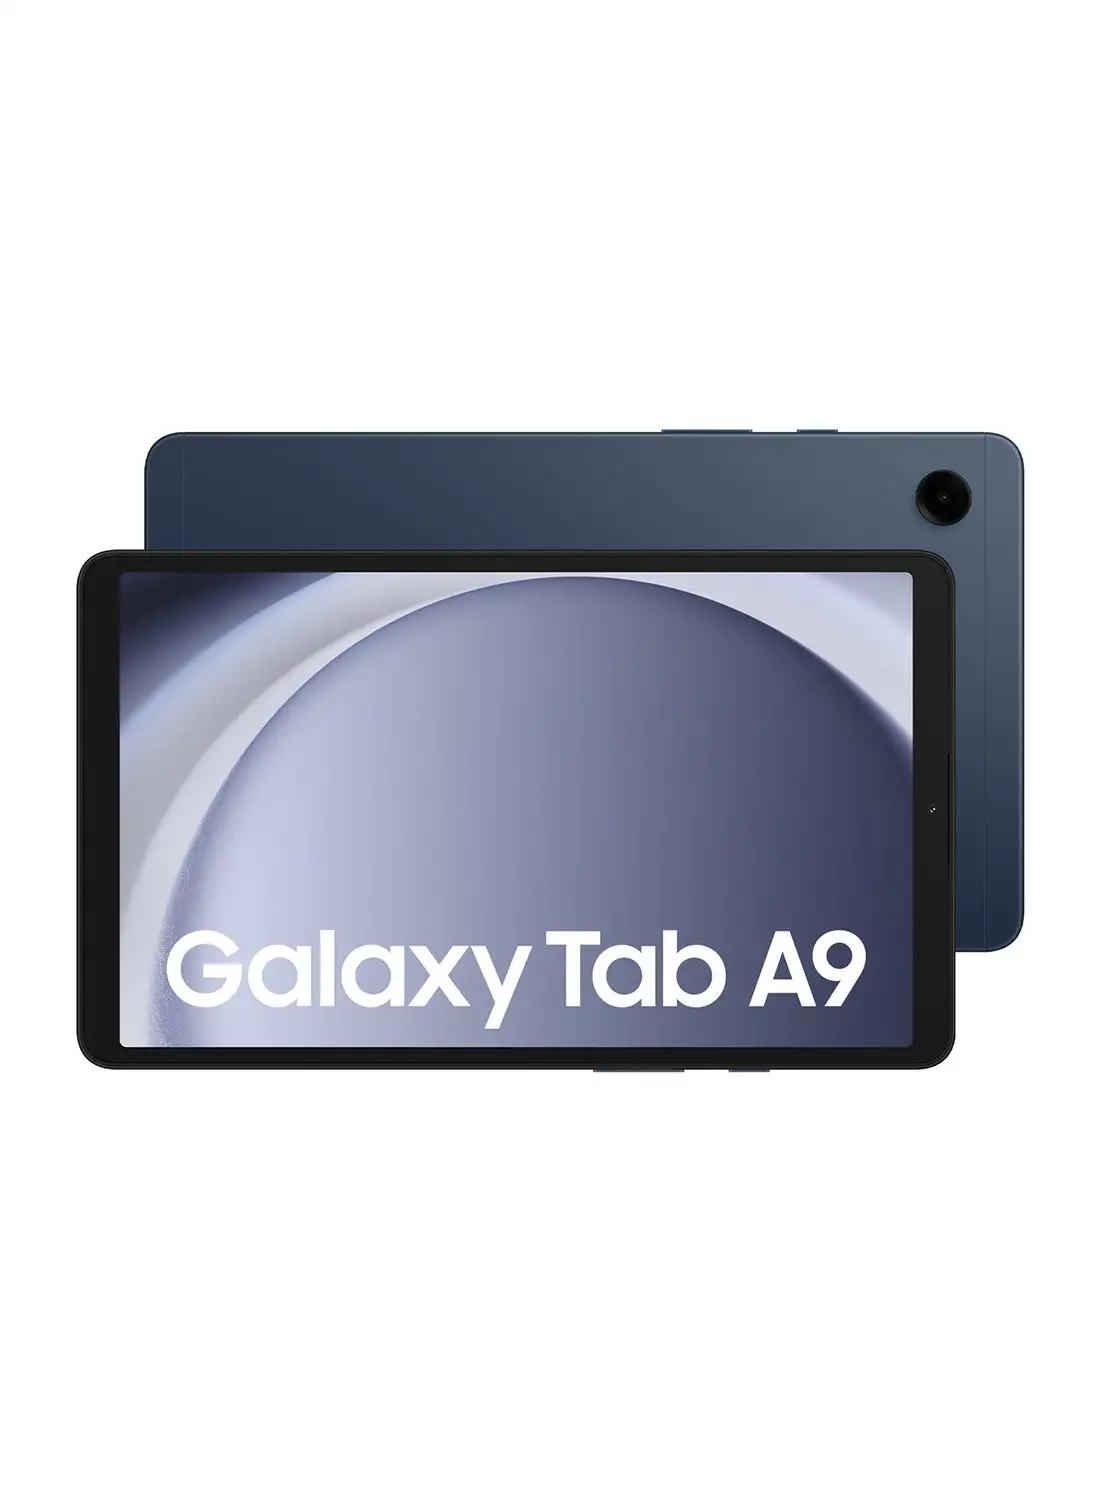 Samsung Galaxy Tab A9 Navy 4GB RAM 64GB LTE - Middle East Version